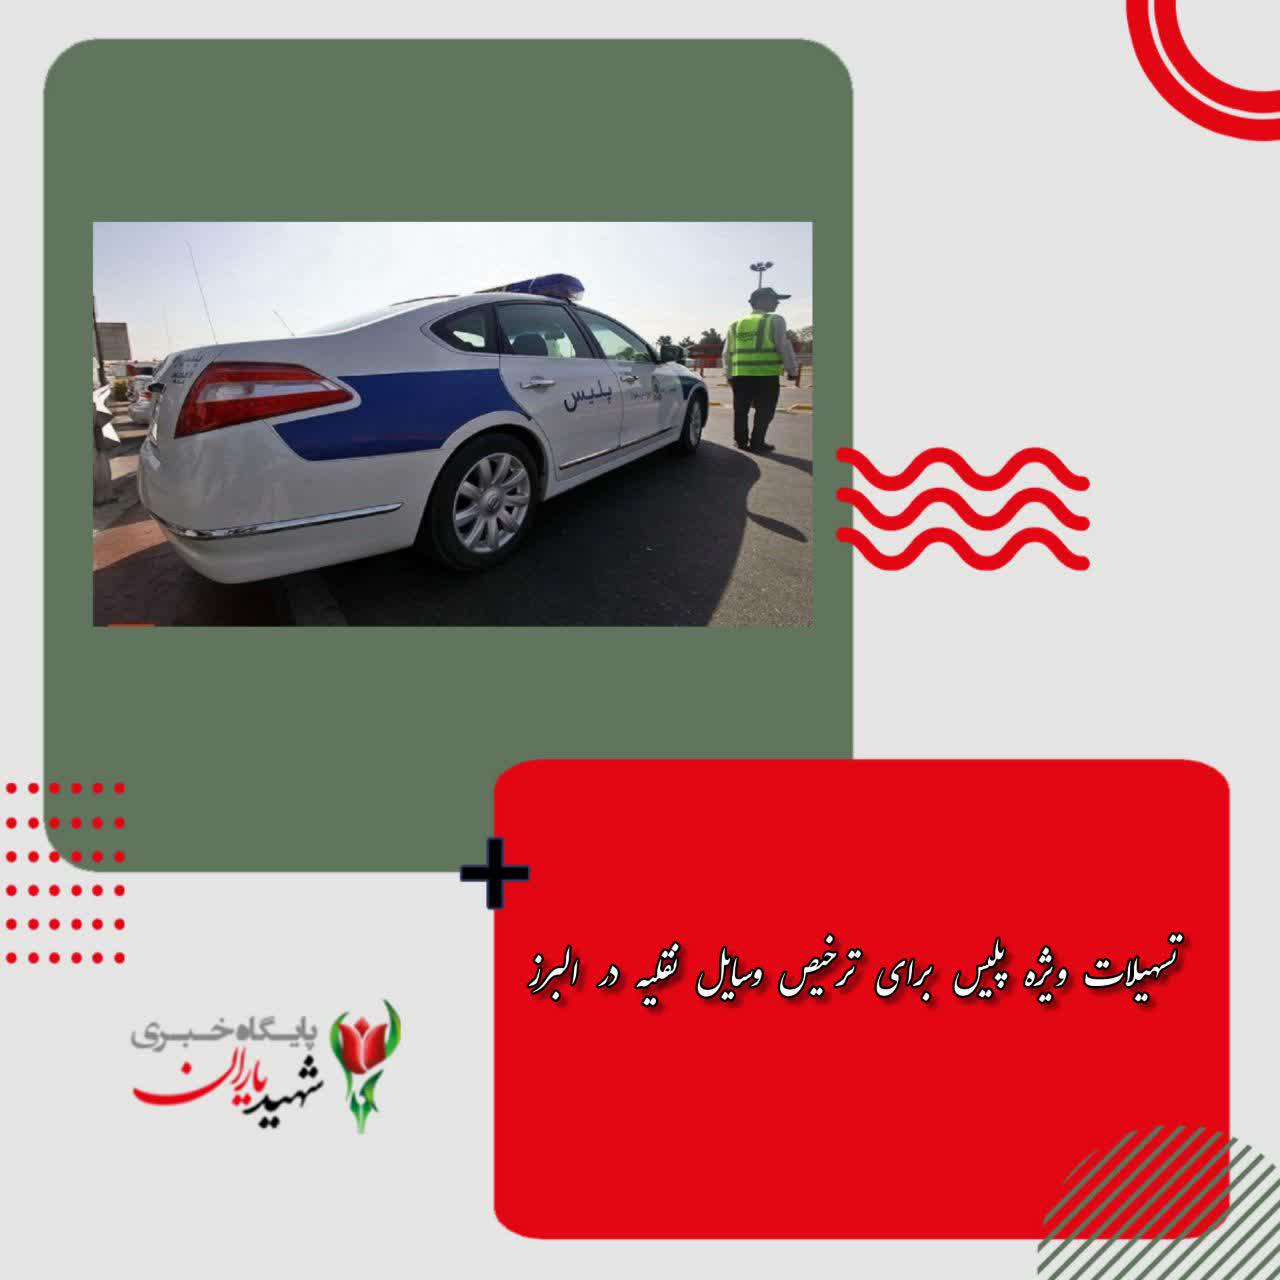 تسهیلات ویژه پلیس برای ترخیص وسایل نقلیه در البرز